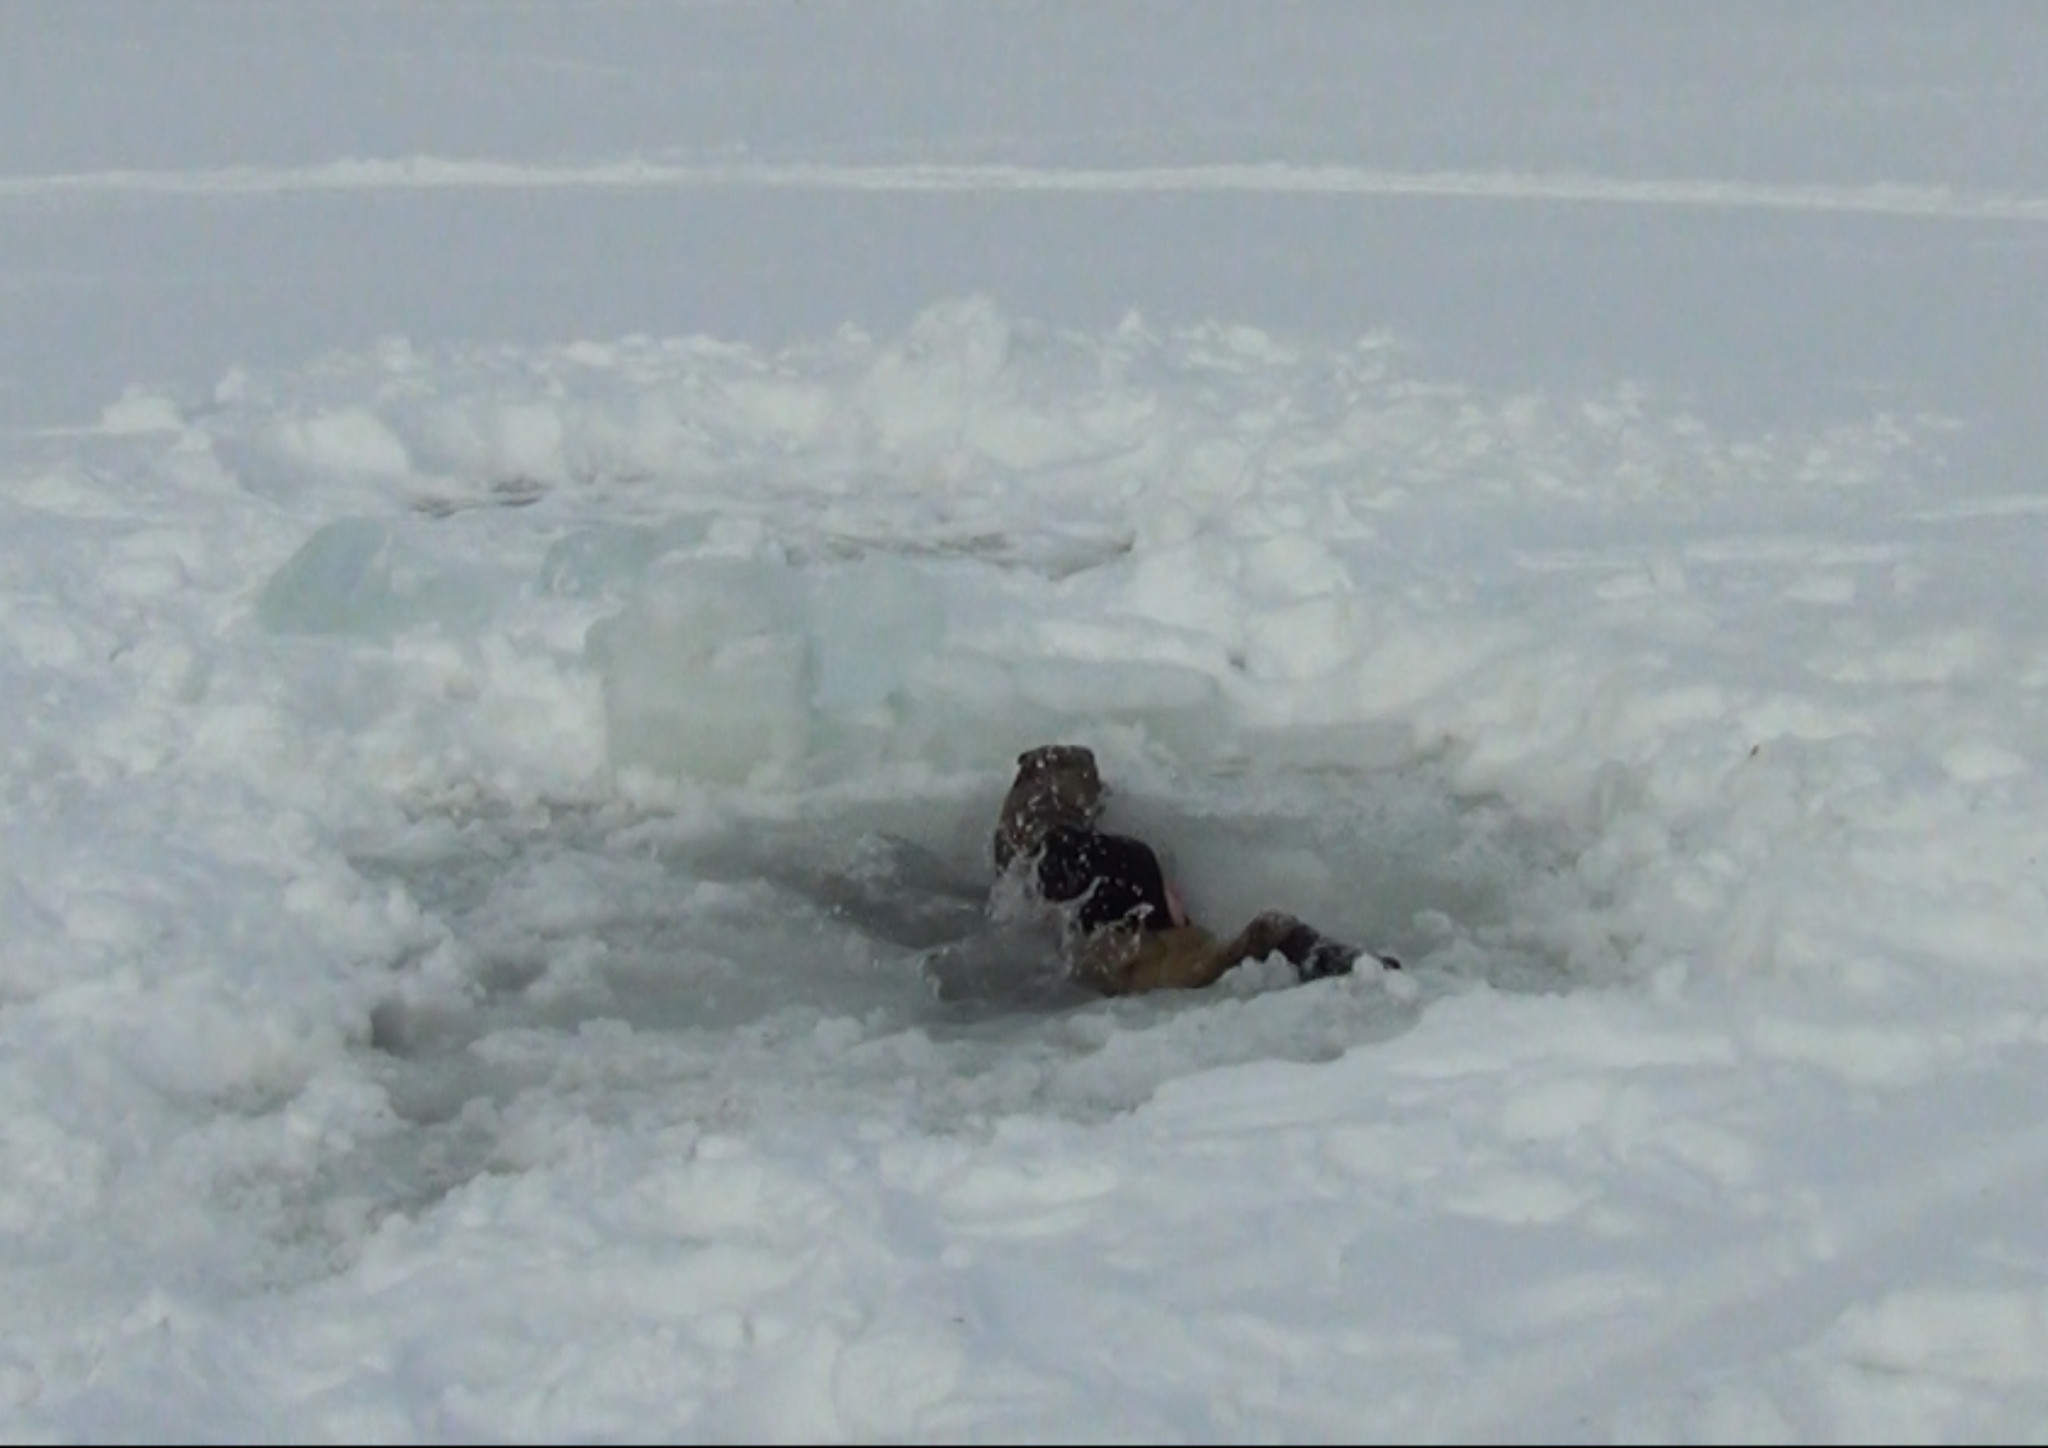 Трагедия: житель Марий Эл утонул, провалившись под лед